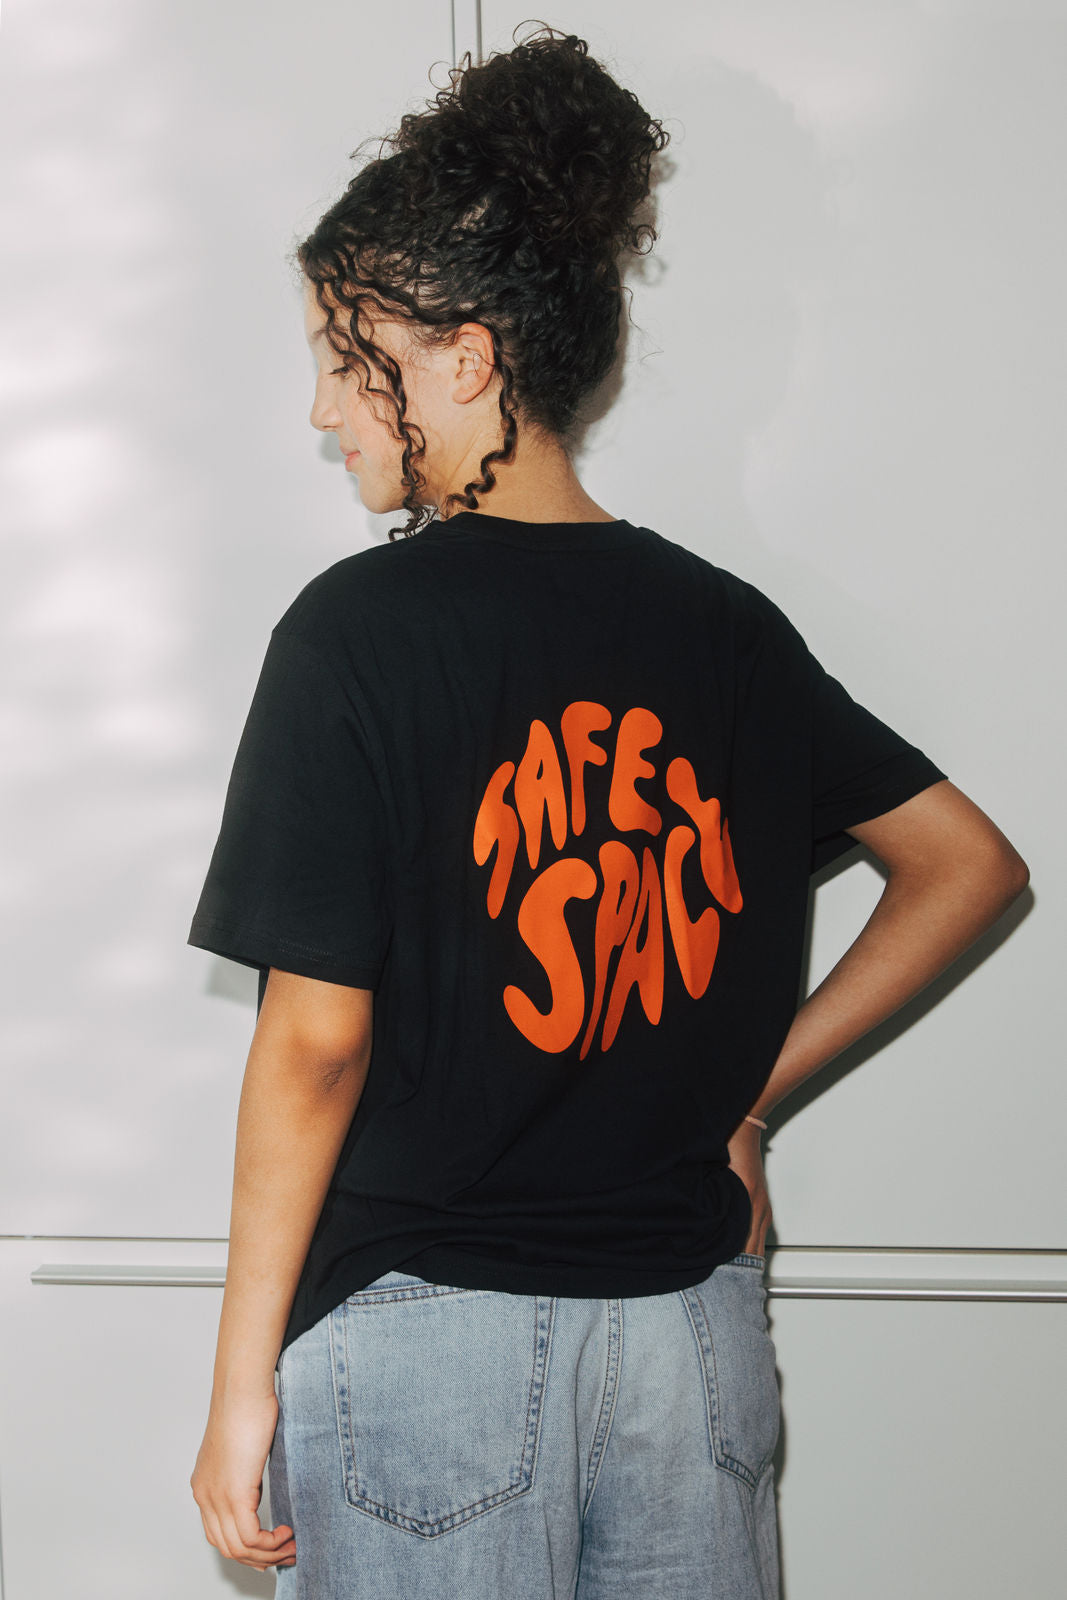 T-Shirt "Mission SafeSpace" schwarz/orange